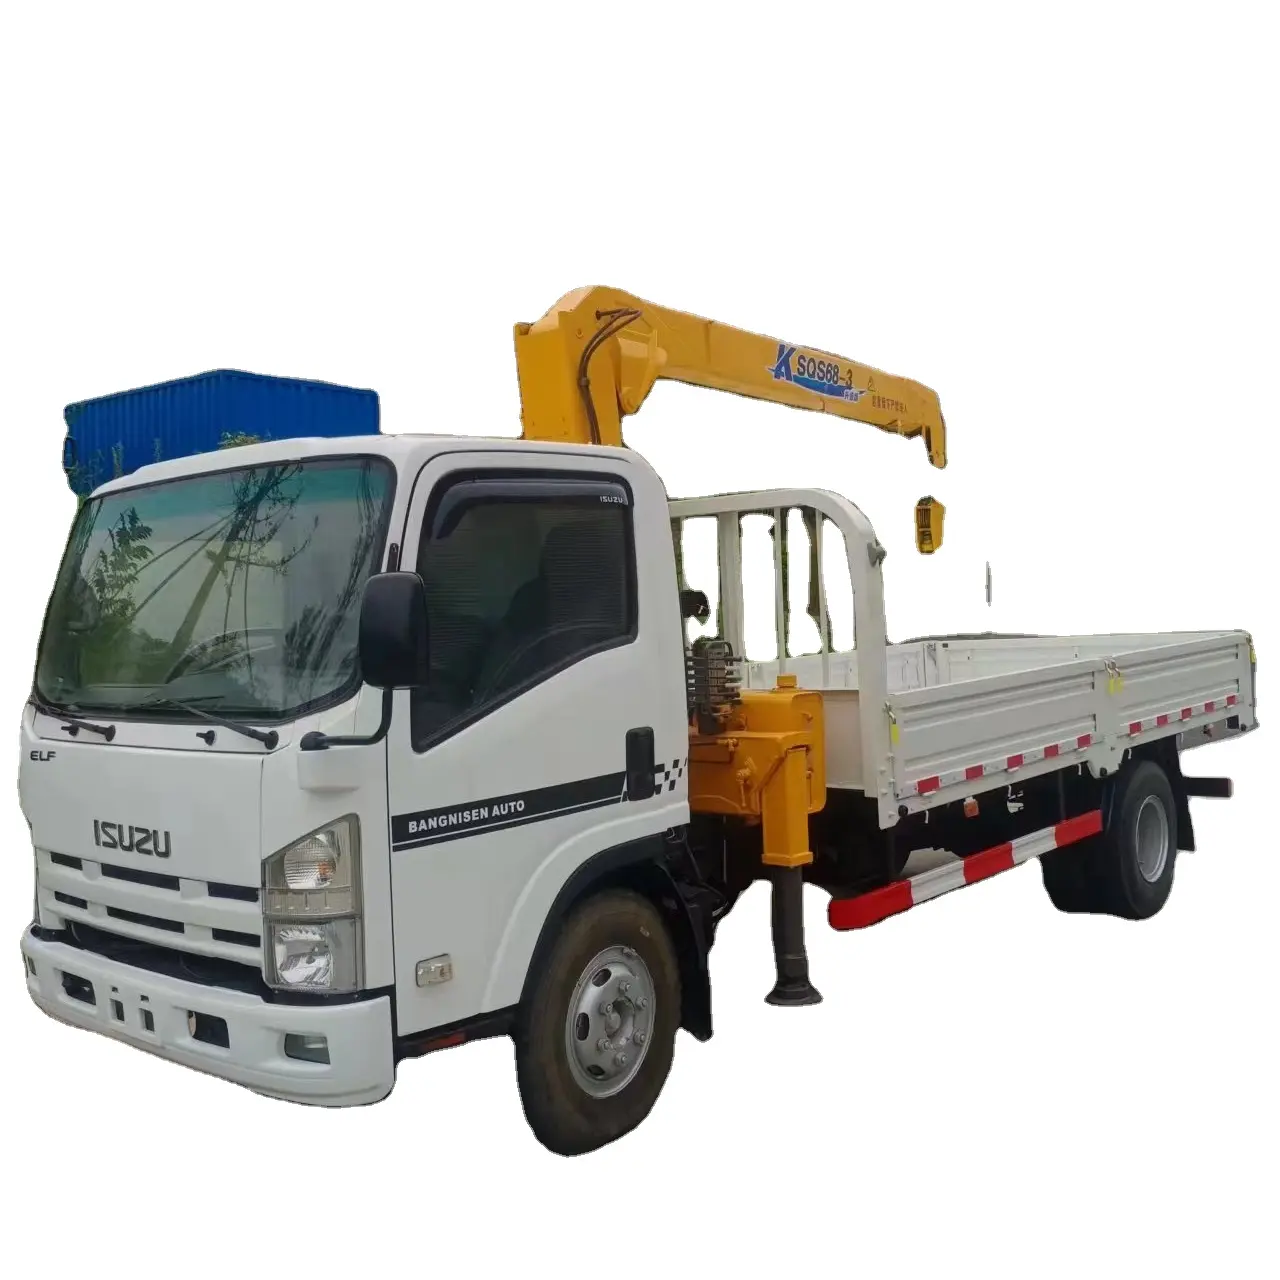 Giappone Isuzus ELF 700P camion gru montato su camion camion di sollevamento veicolo di trasporto per la vendita